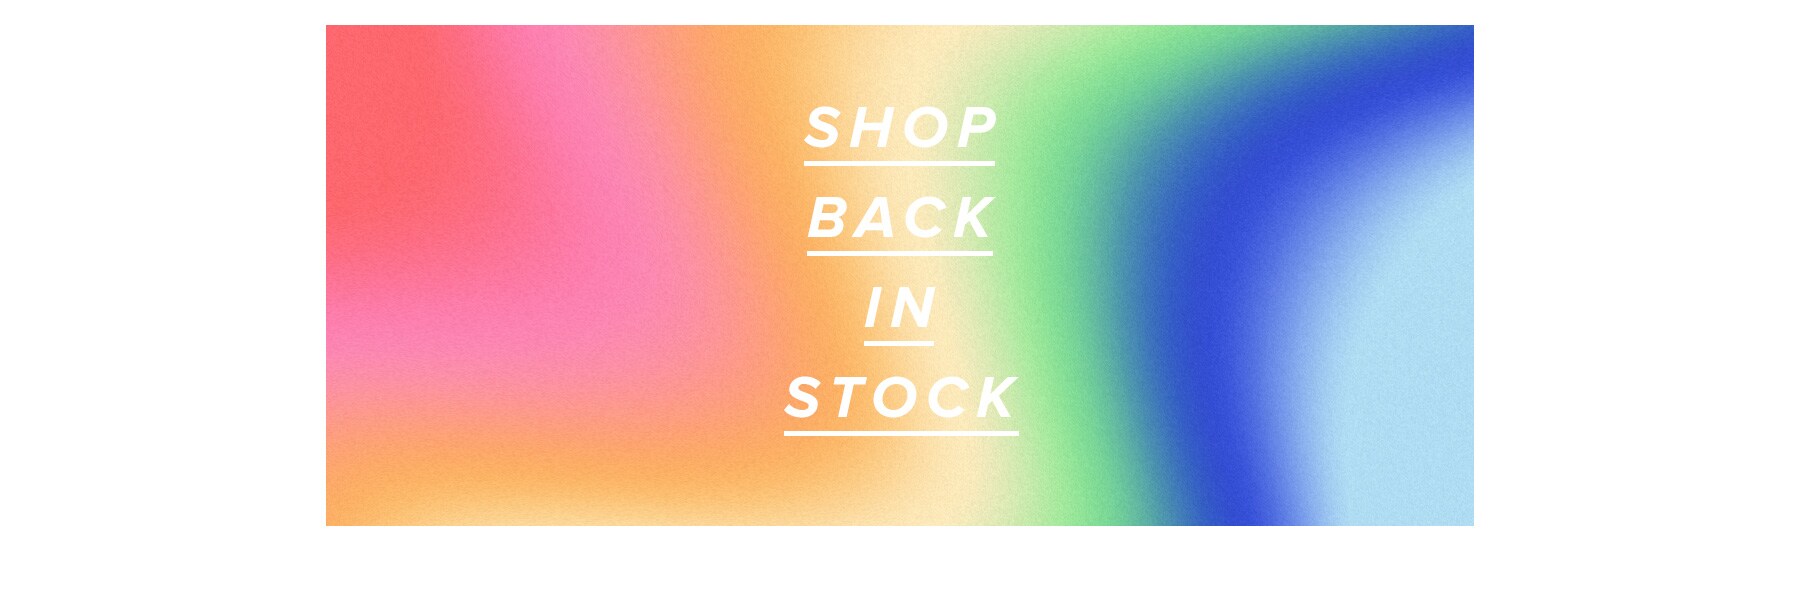 shop tagr back in stock